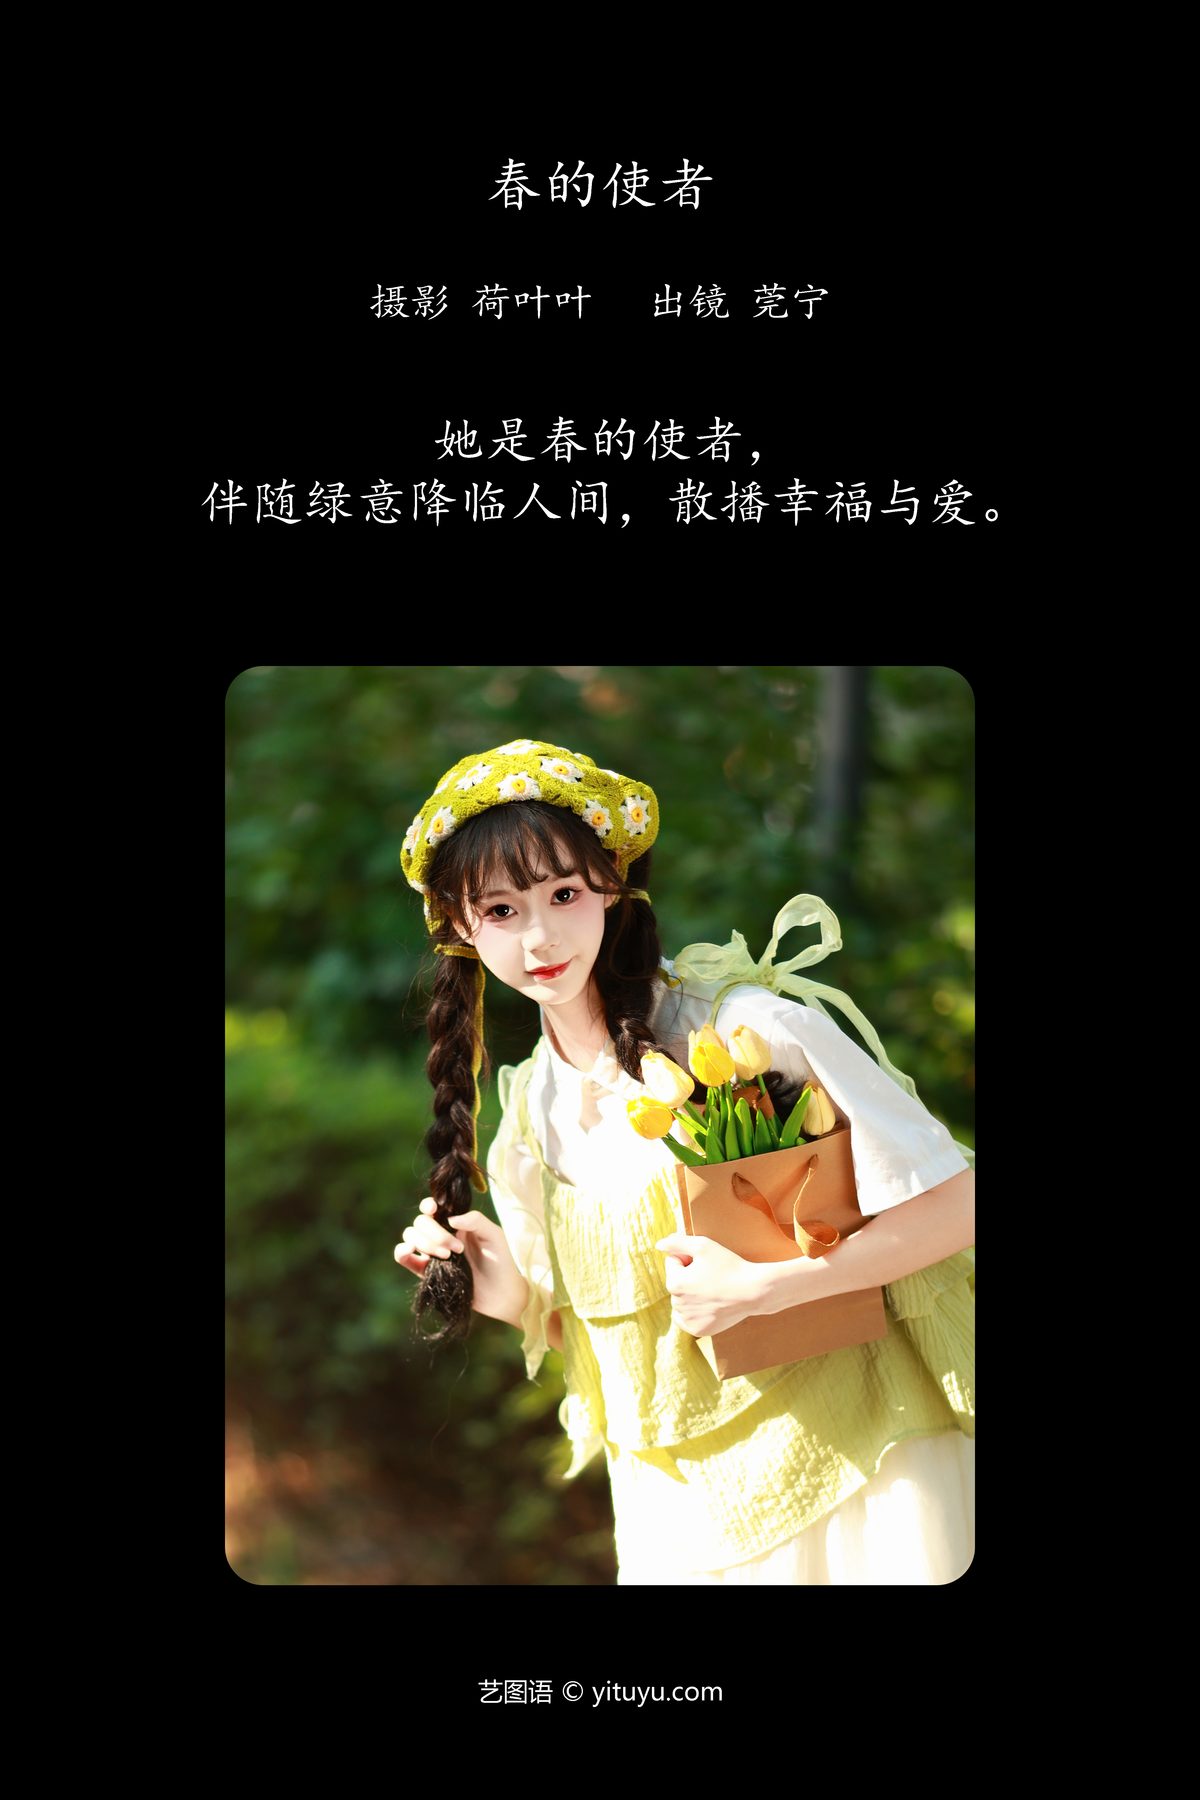 YiTuYu艺图语 Vol 5838 Guan Ning 0002 9895852322.jpg